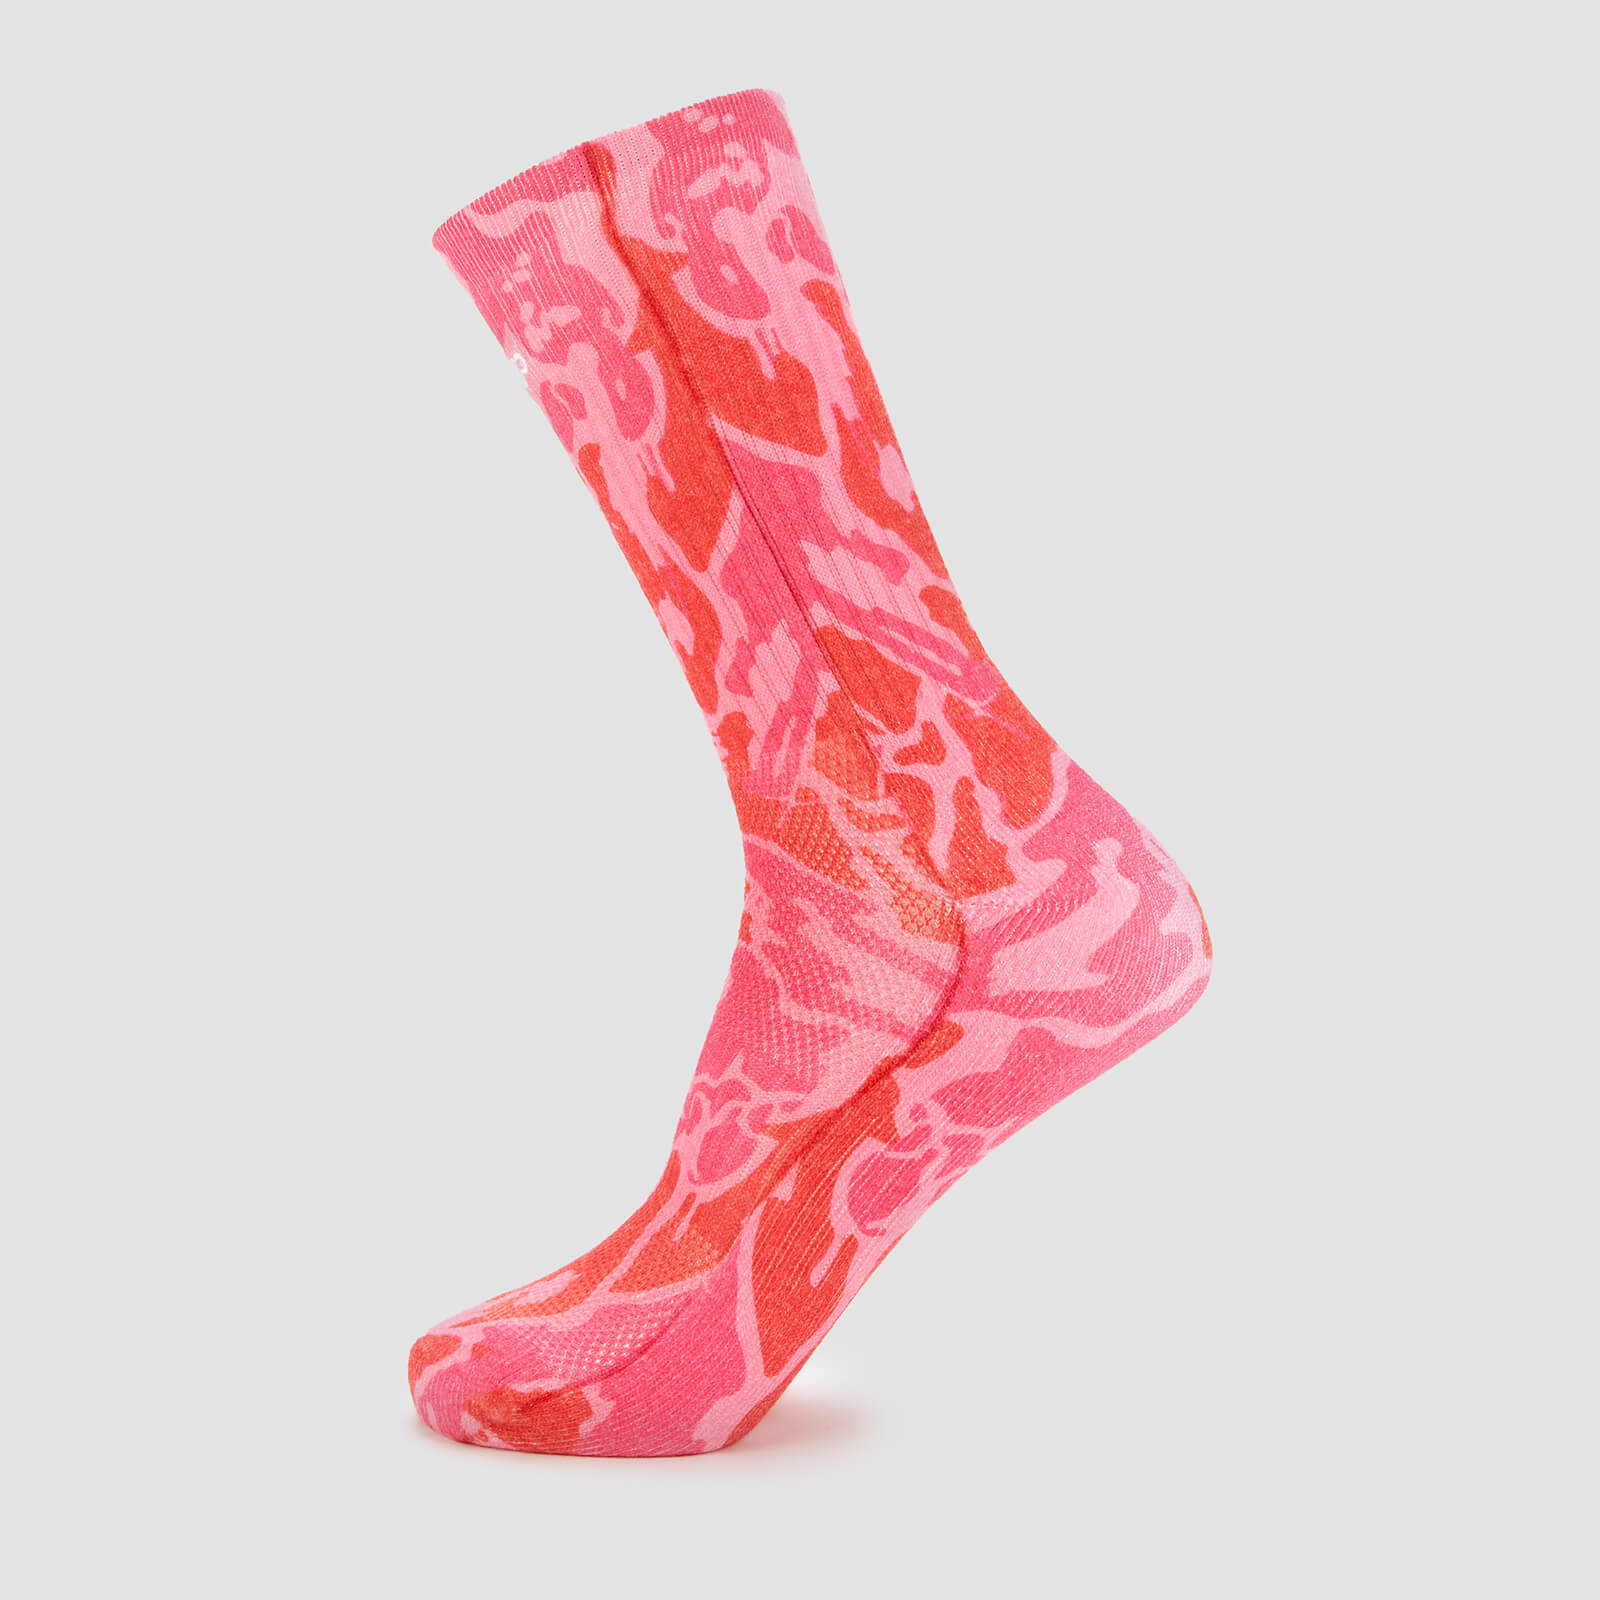 MP X Hexxee Adapt čarape - Pink Camo - UK 7.5-10